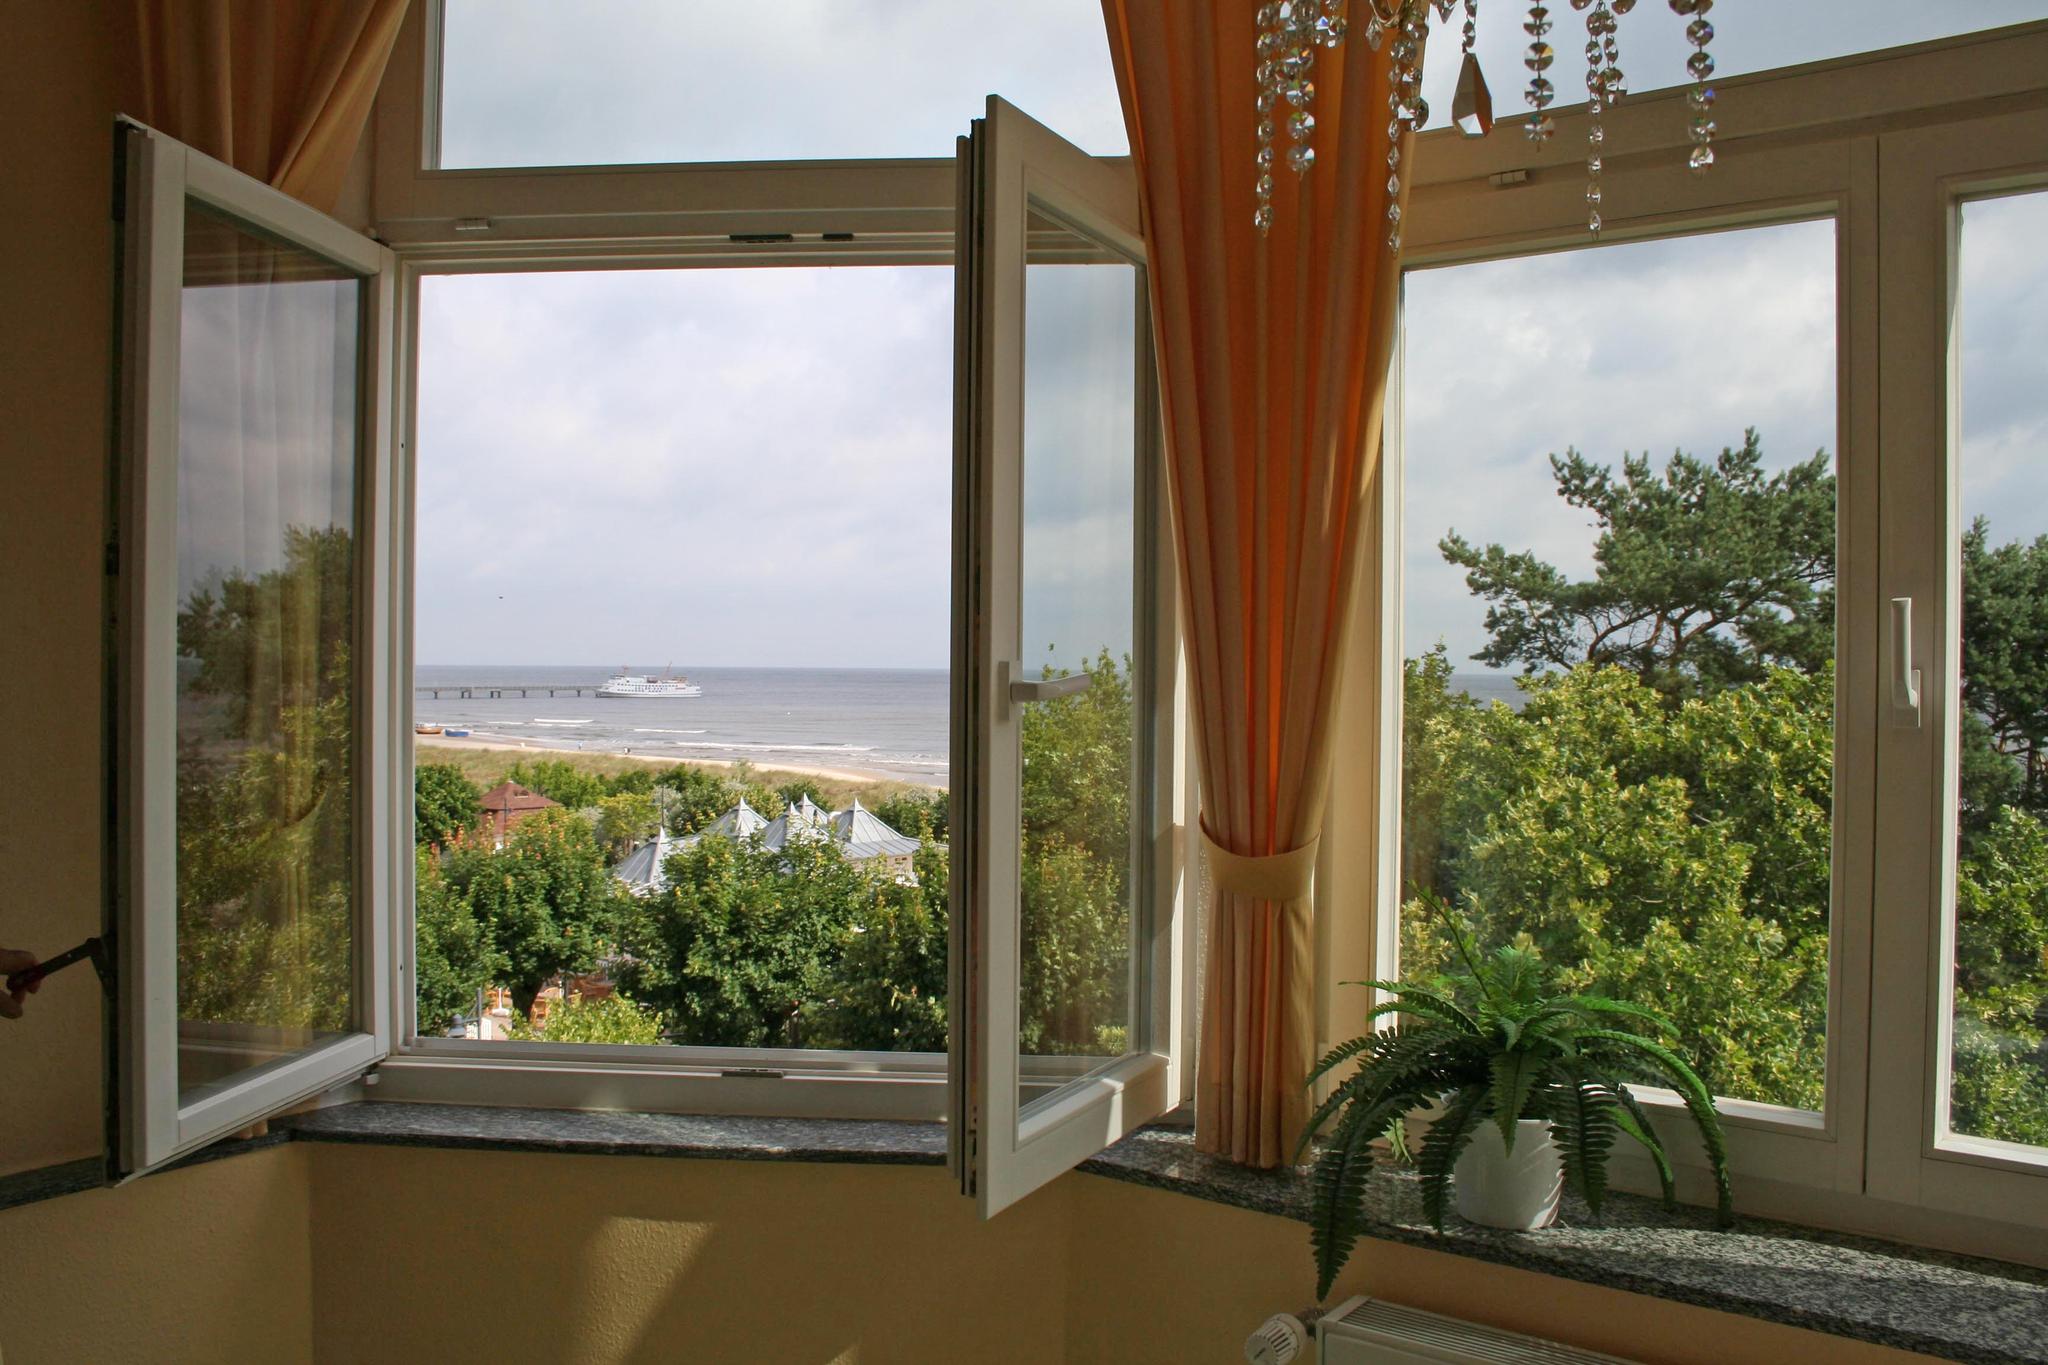 Blick aus dem Fenster auf die Ostsee